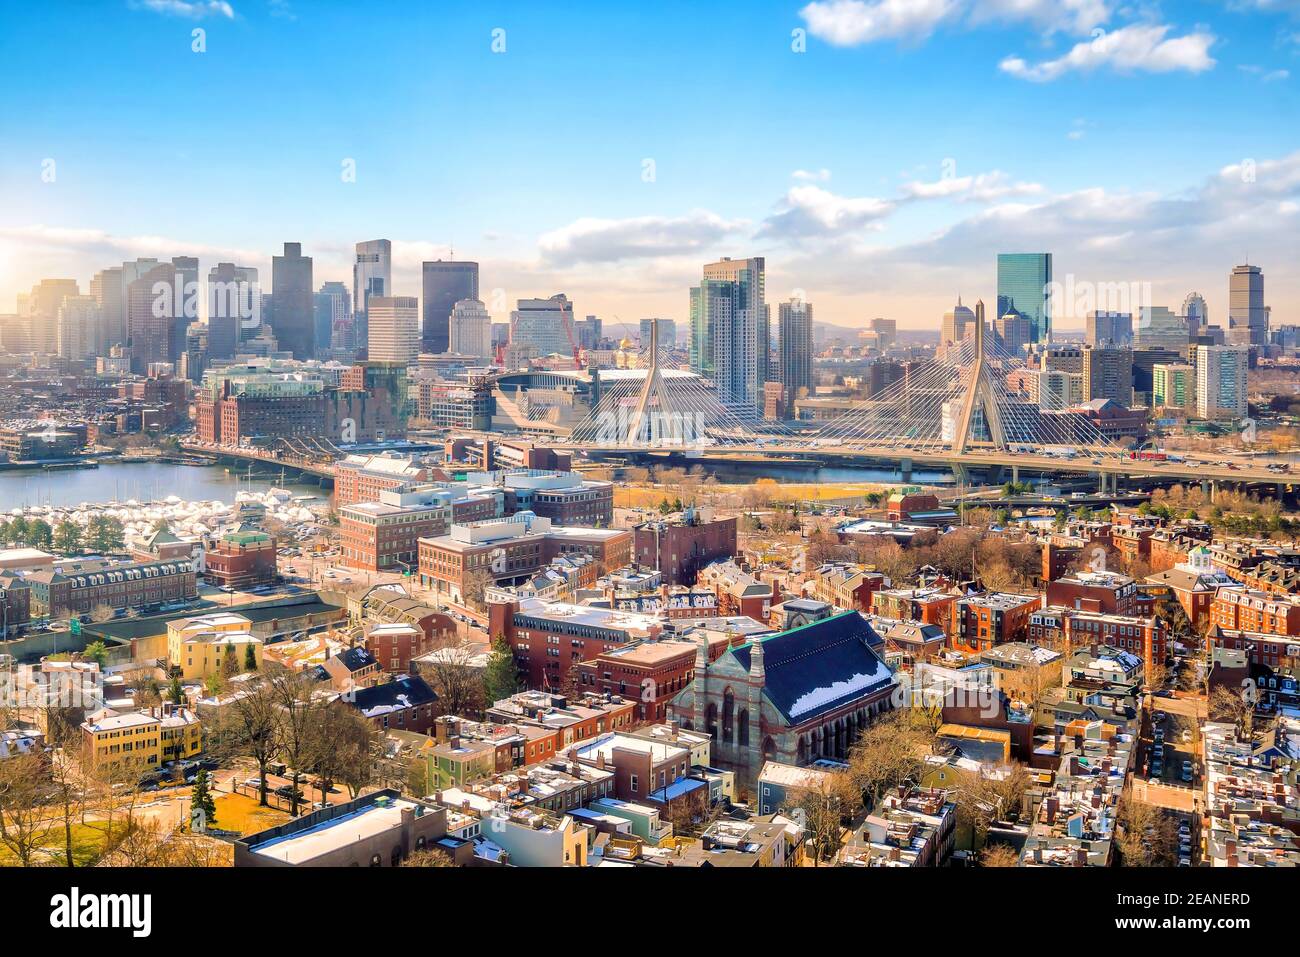 The skyline of Boston in Massachusetts, USA Stock Photo